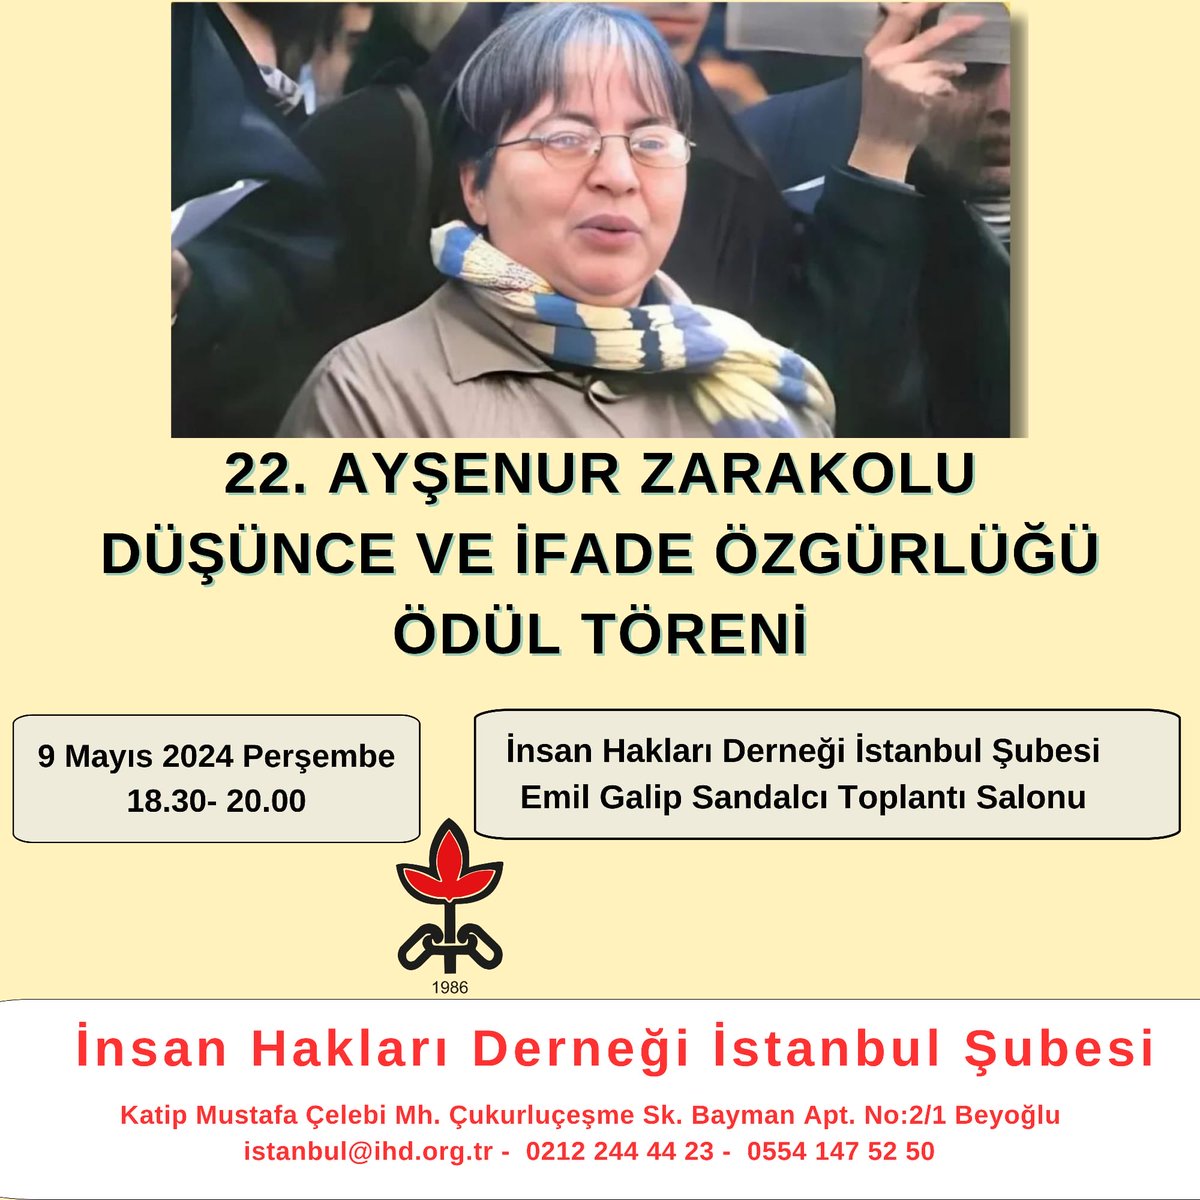 Yarın sevgili Ayşenur Zarakolu adına her yıl verilen Düşünce Ve İfade Özgürlüğü ödül töreni var. İHD İstanbul şubesinde saat 18.30 da bekleriz.